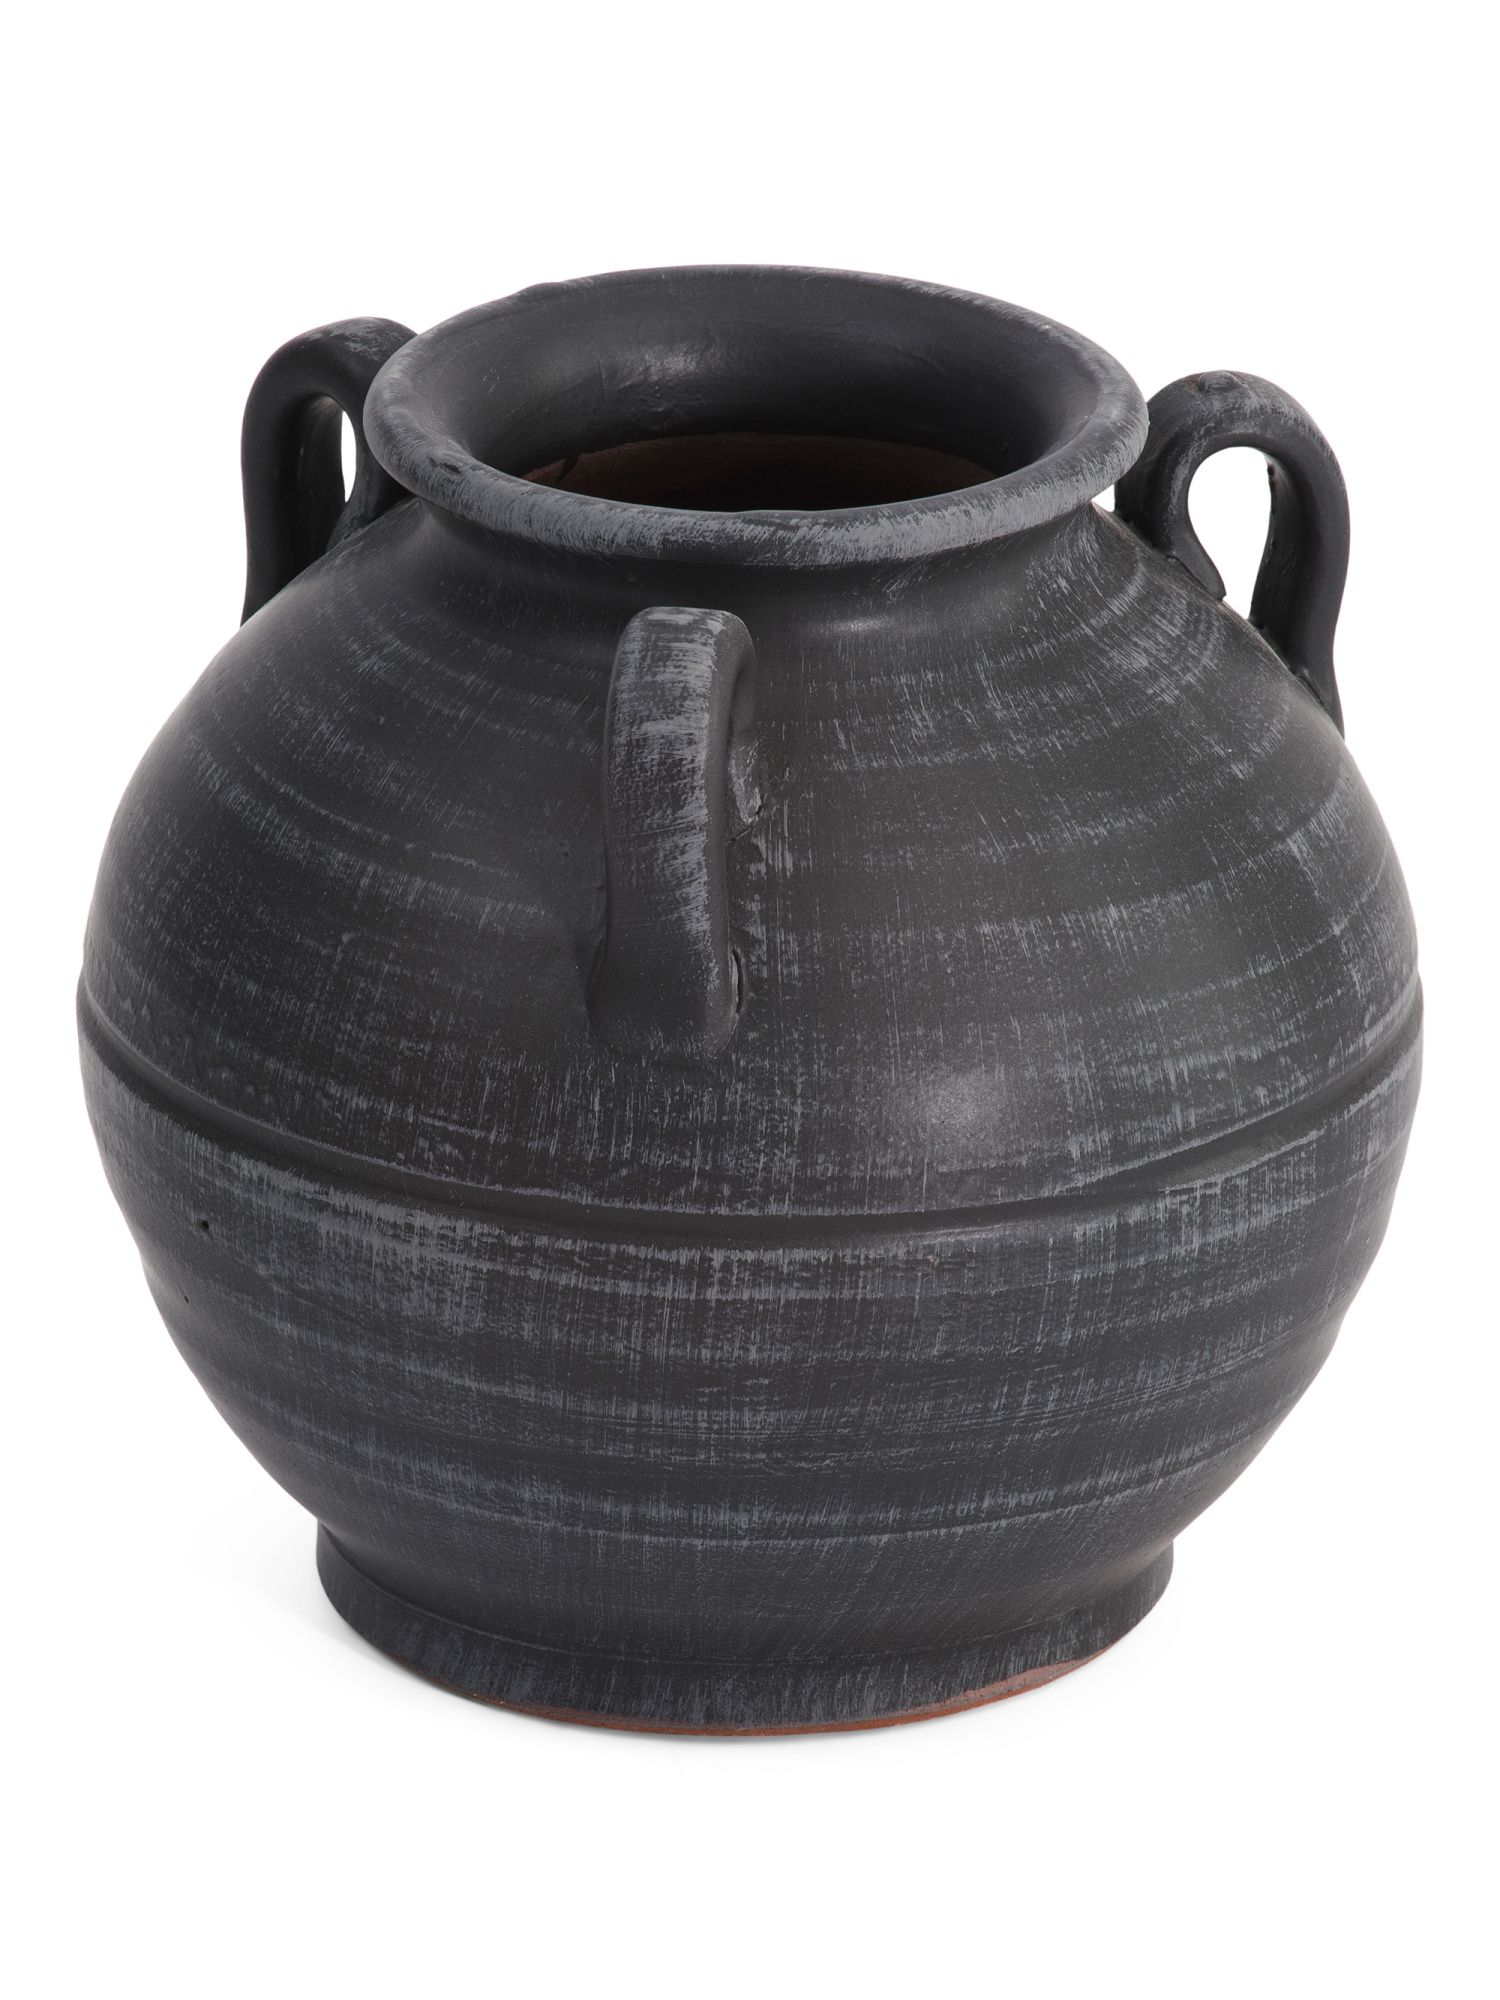 8x8in Handled Ceramic Planter Vase | TJ Maxx